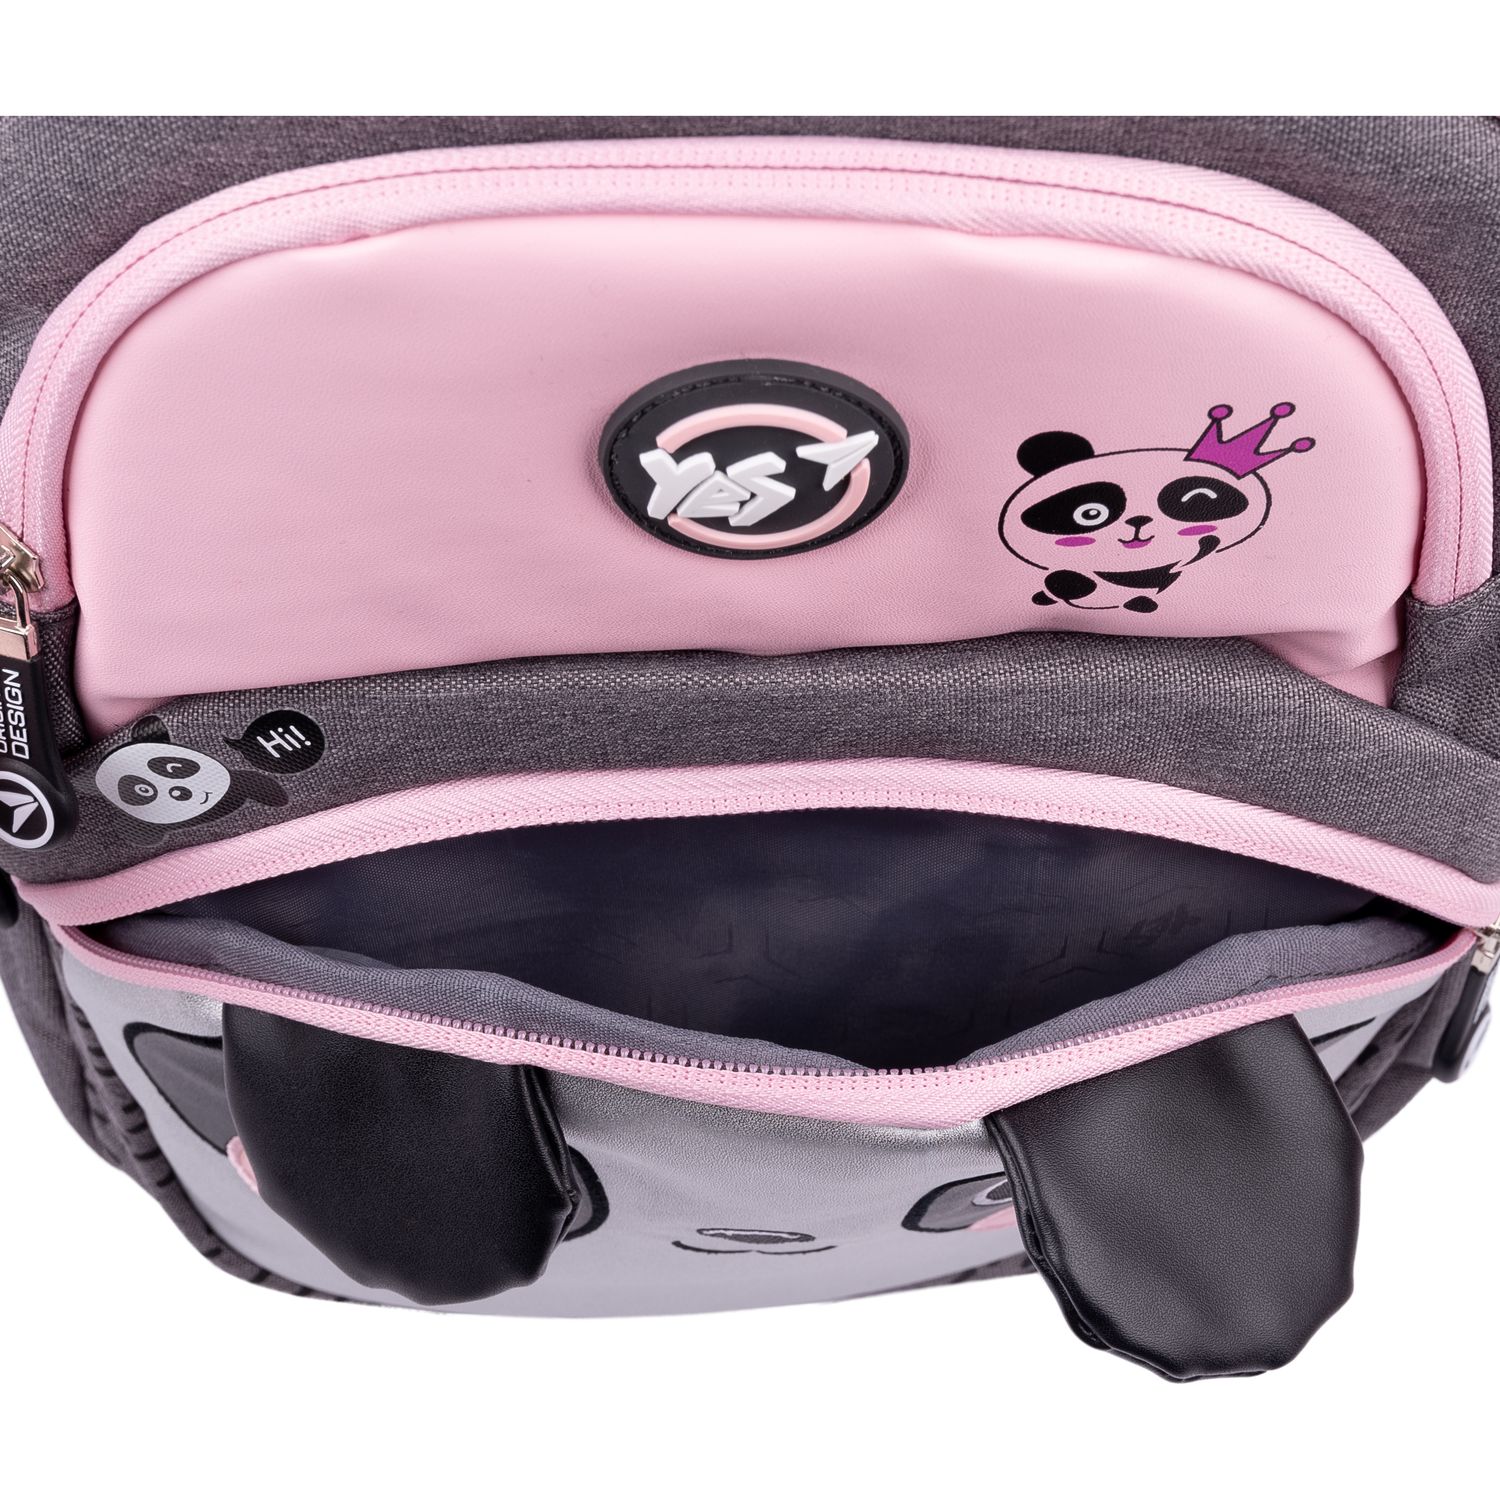 Рюкзак Yes TS-42 Hi panda, серый с розовым (554676) - фото 12